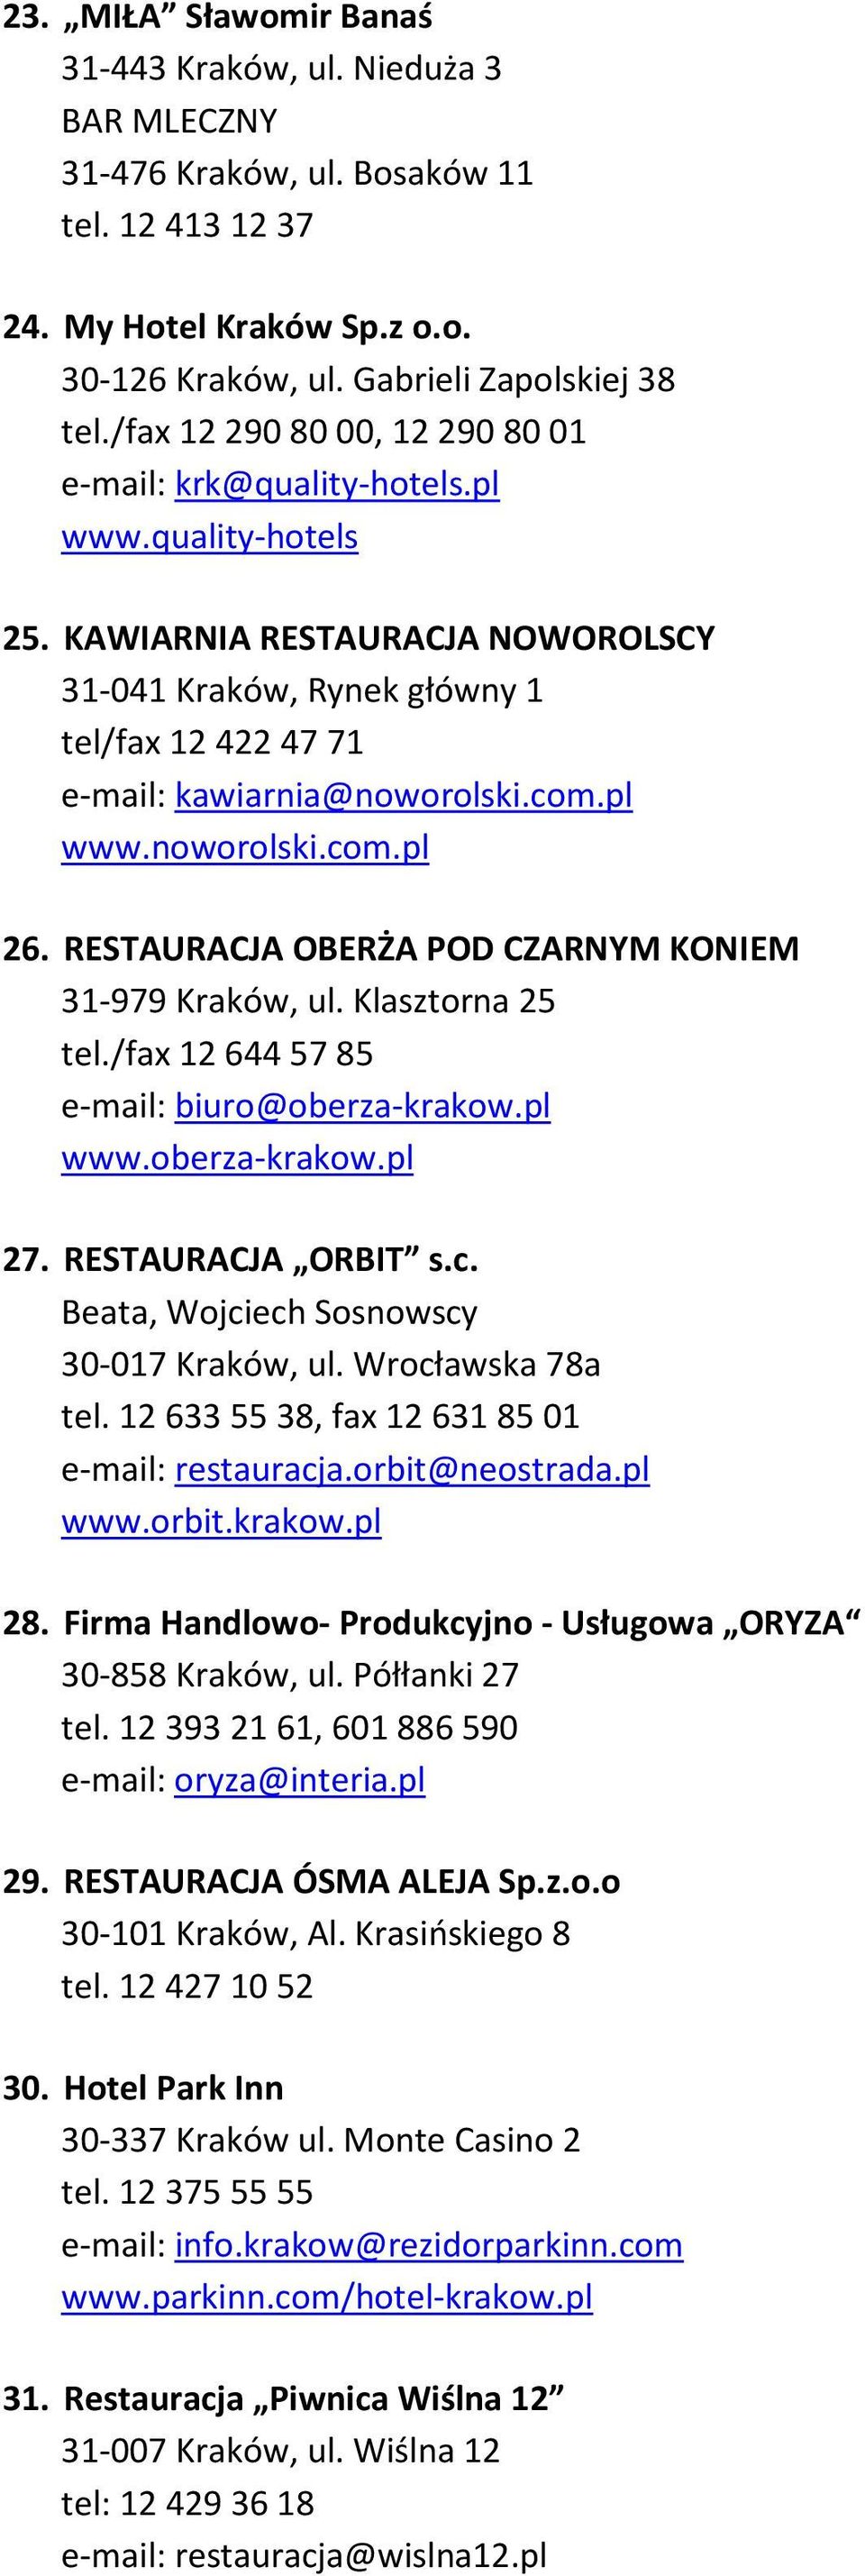 com.pl www.noworolski.com.pl 26. RESTAURACJA OBERŻA POD CZARNYM KONIEM 31-979 Kraków, ul. Klasztorna 25 tel./fax 12 644 57 85 e-mail: biuro@oberza-krakow.pl www.oberza-krakow.pl 27.